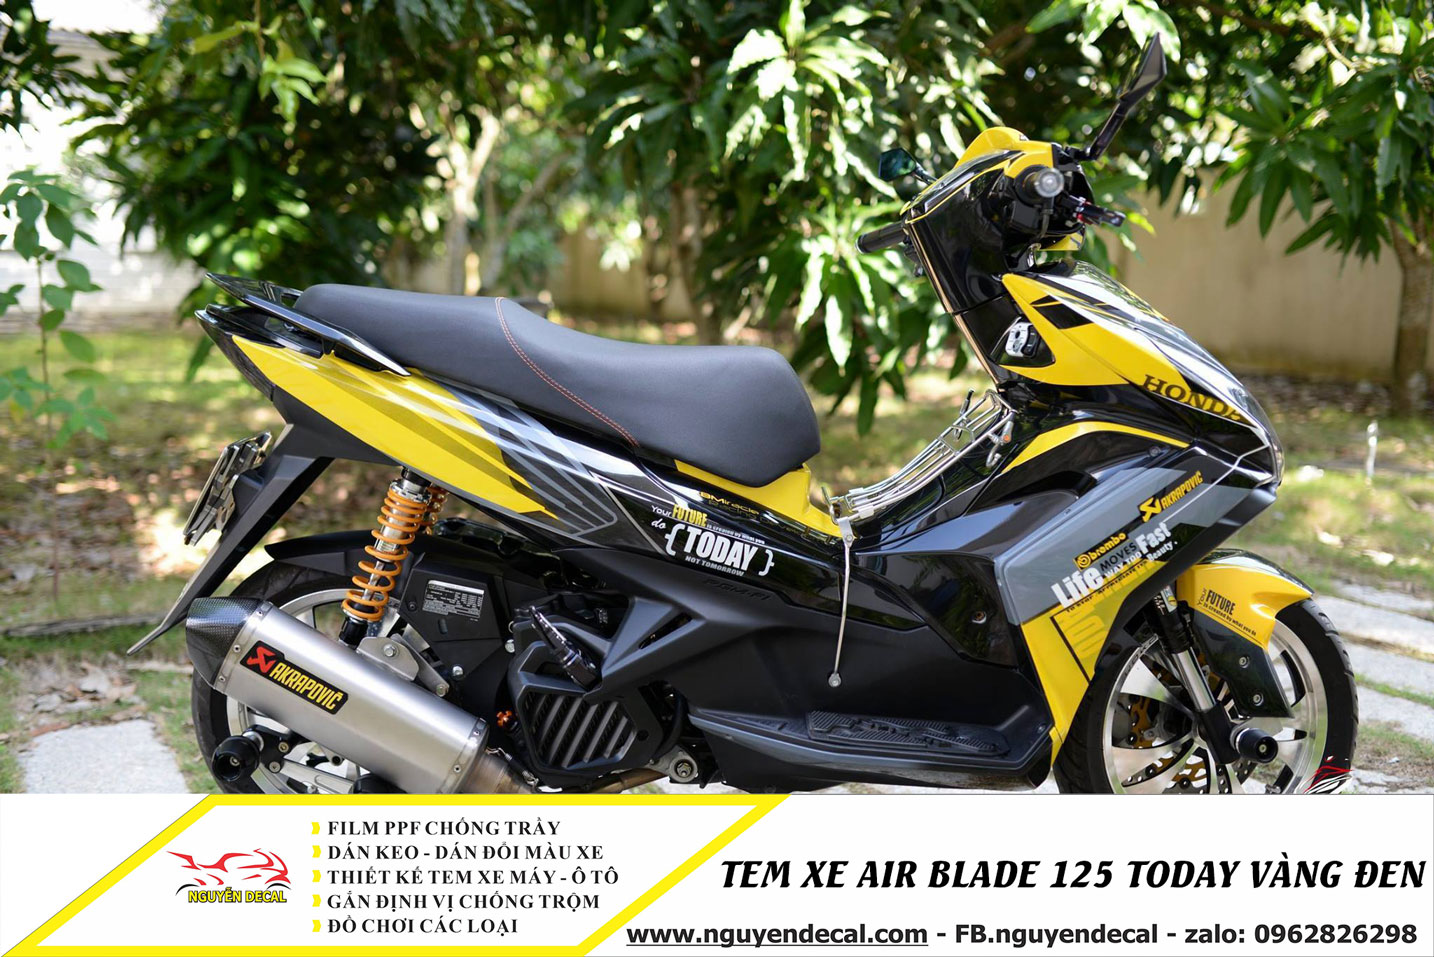 Tem xe air blade 125cc today vàng đen - Nguyễn Decal - Chuyên Dán Keo Xe  Design Tem Xe Decal Tem Xe Nguyễn Decal